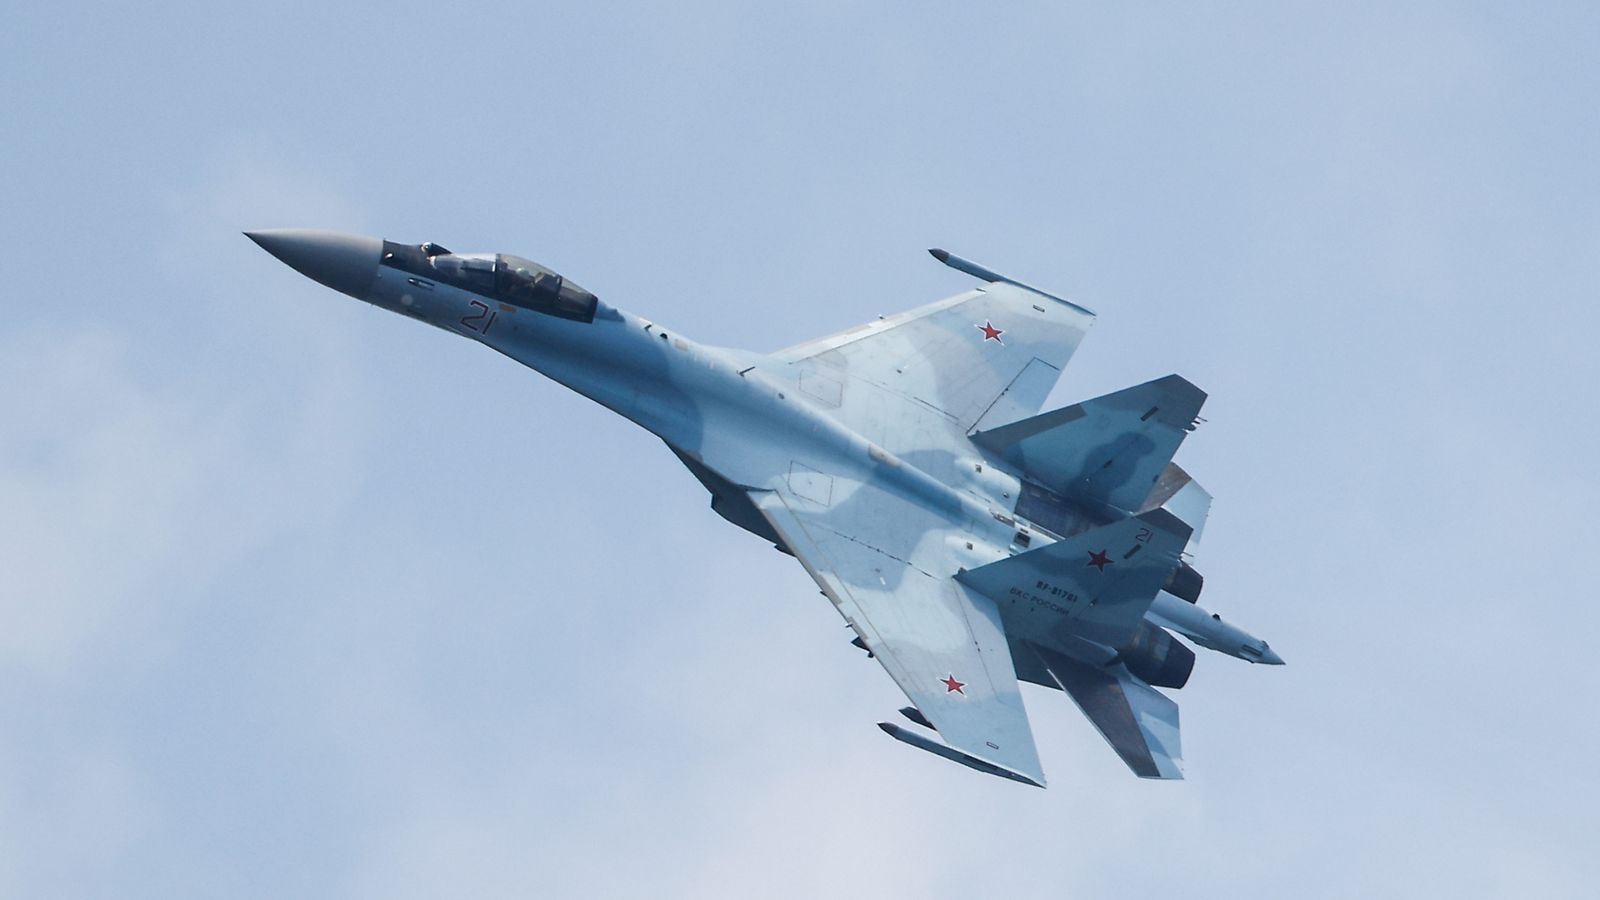 La Russie dit avoir dépêché un avion de chasse pour intercepter deux bombardiers américains au-dessus de la mer Baltique |  Nouvelles du monde